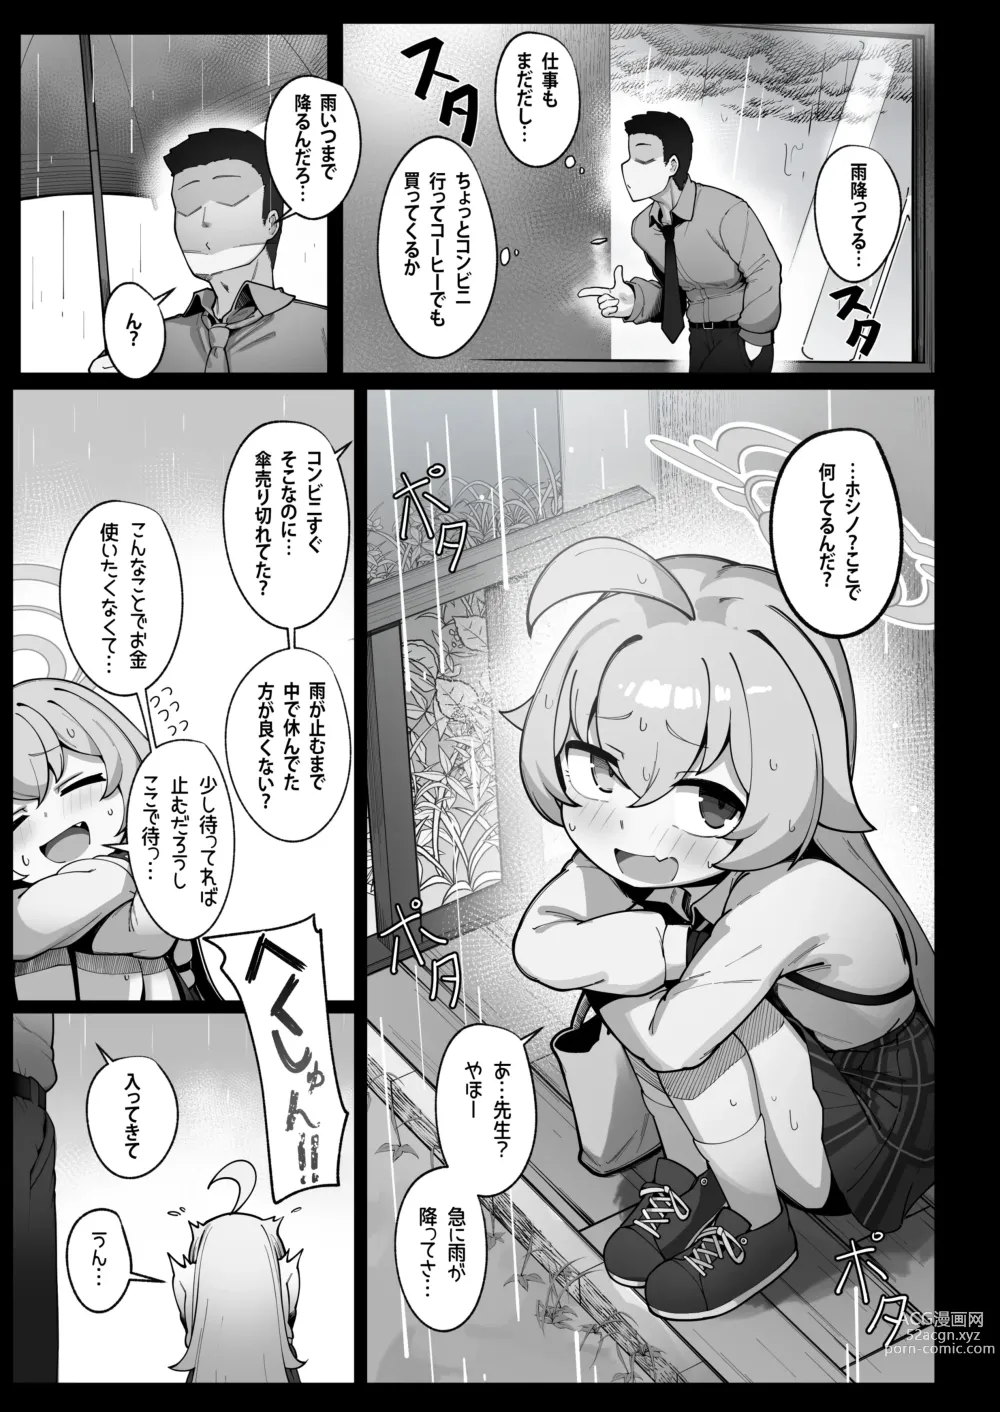 Page 2 of doujinshi Kujira wa Chiisana Shiawase wo Yumemiru (uncensored)